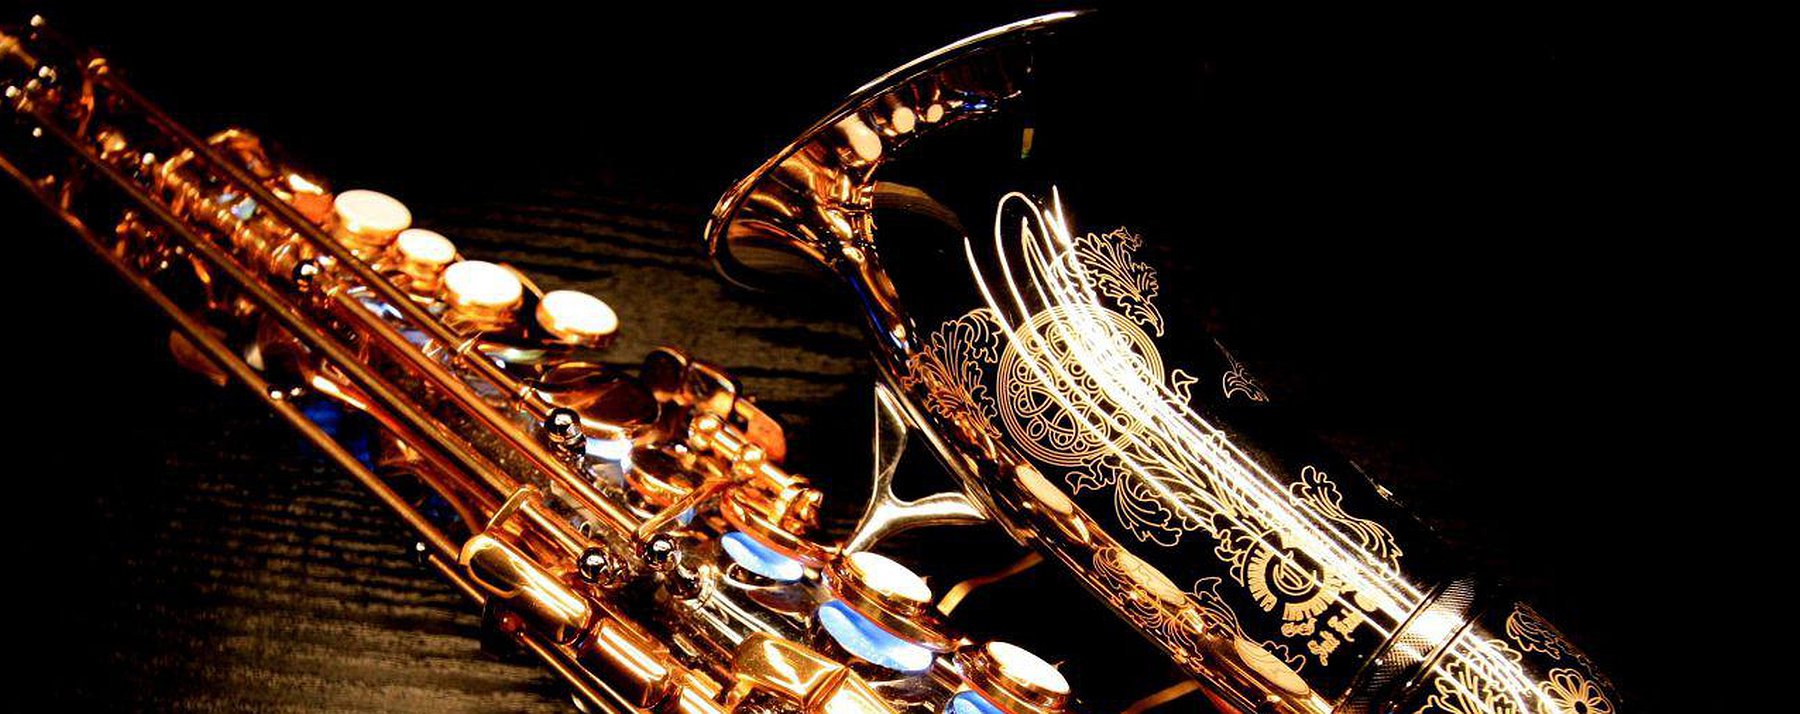 Саксофон 6. Саксофон. Золотой саксофон. Саксофон деревянный духовой музыкальный инструмент. Саксофон фото.